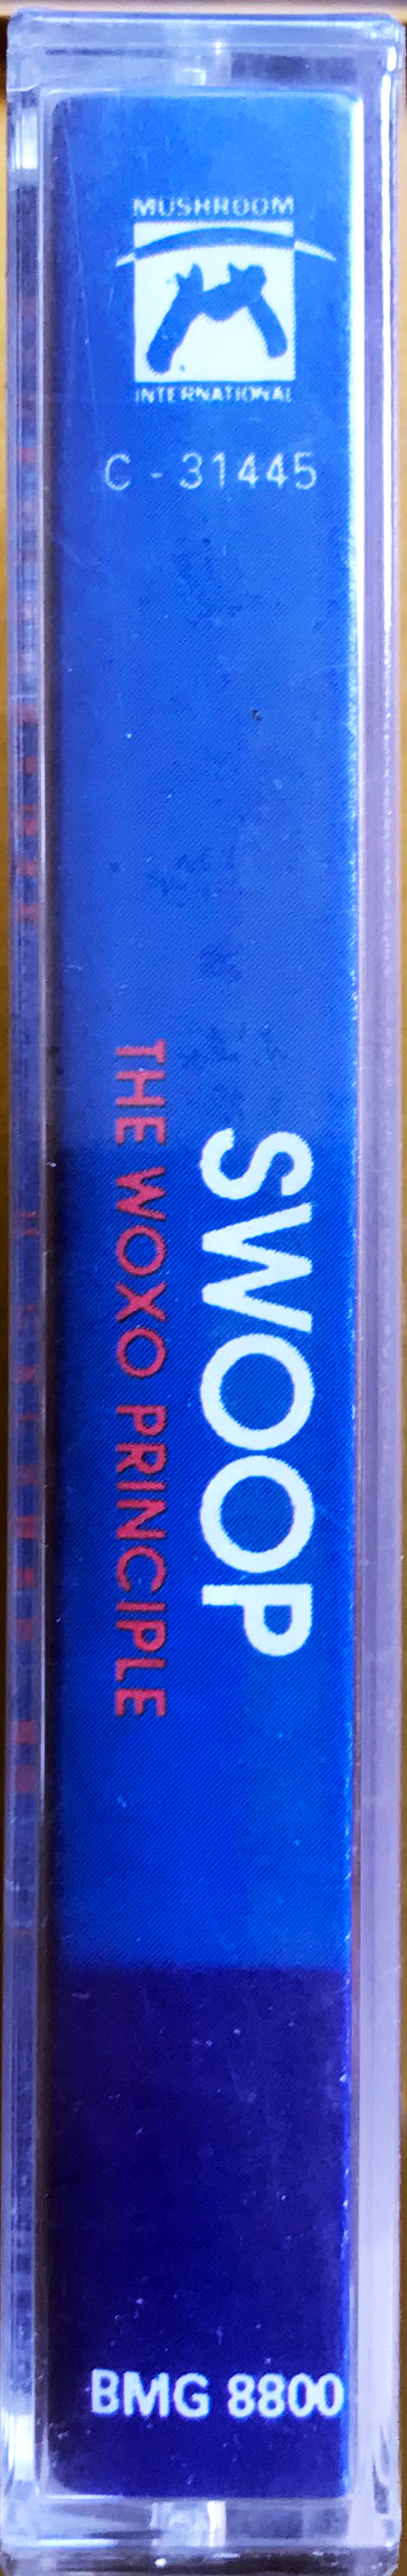 Album herunterladen Swoop - The Woxo Principle